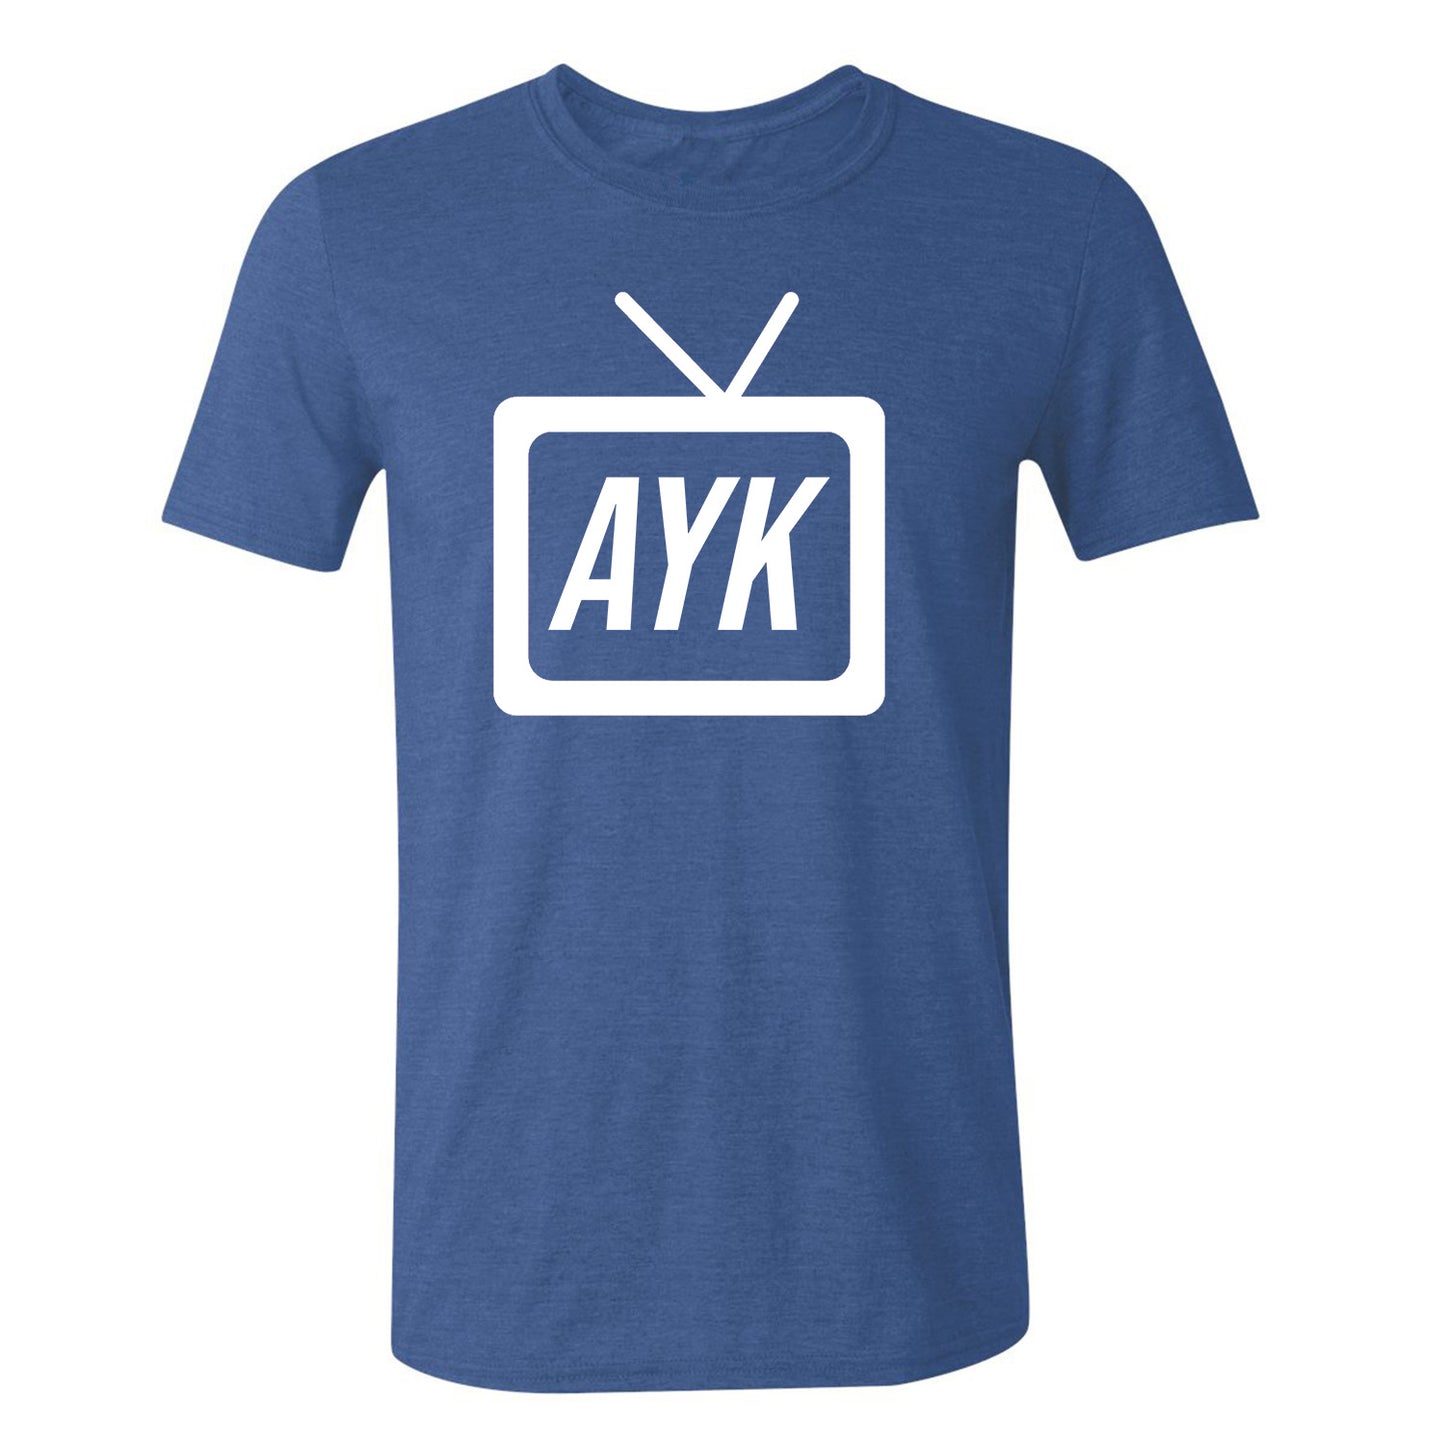 TV AYK Logo - Unisex TShirt